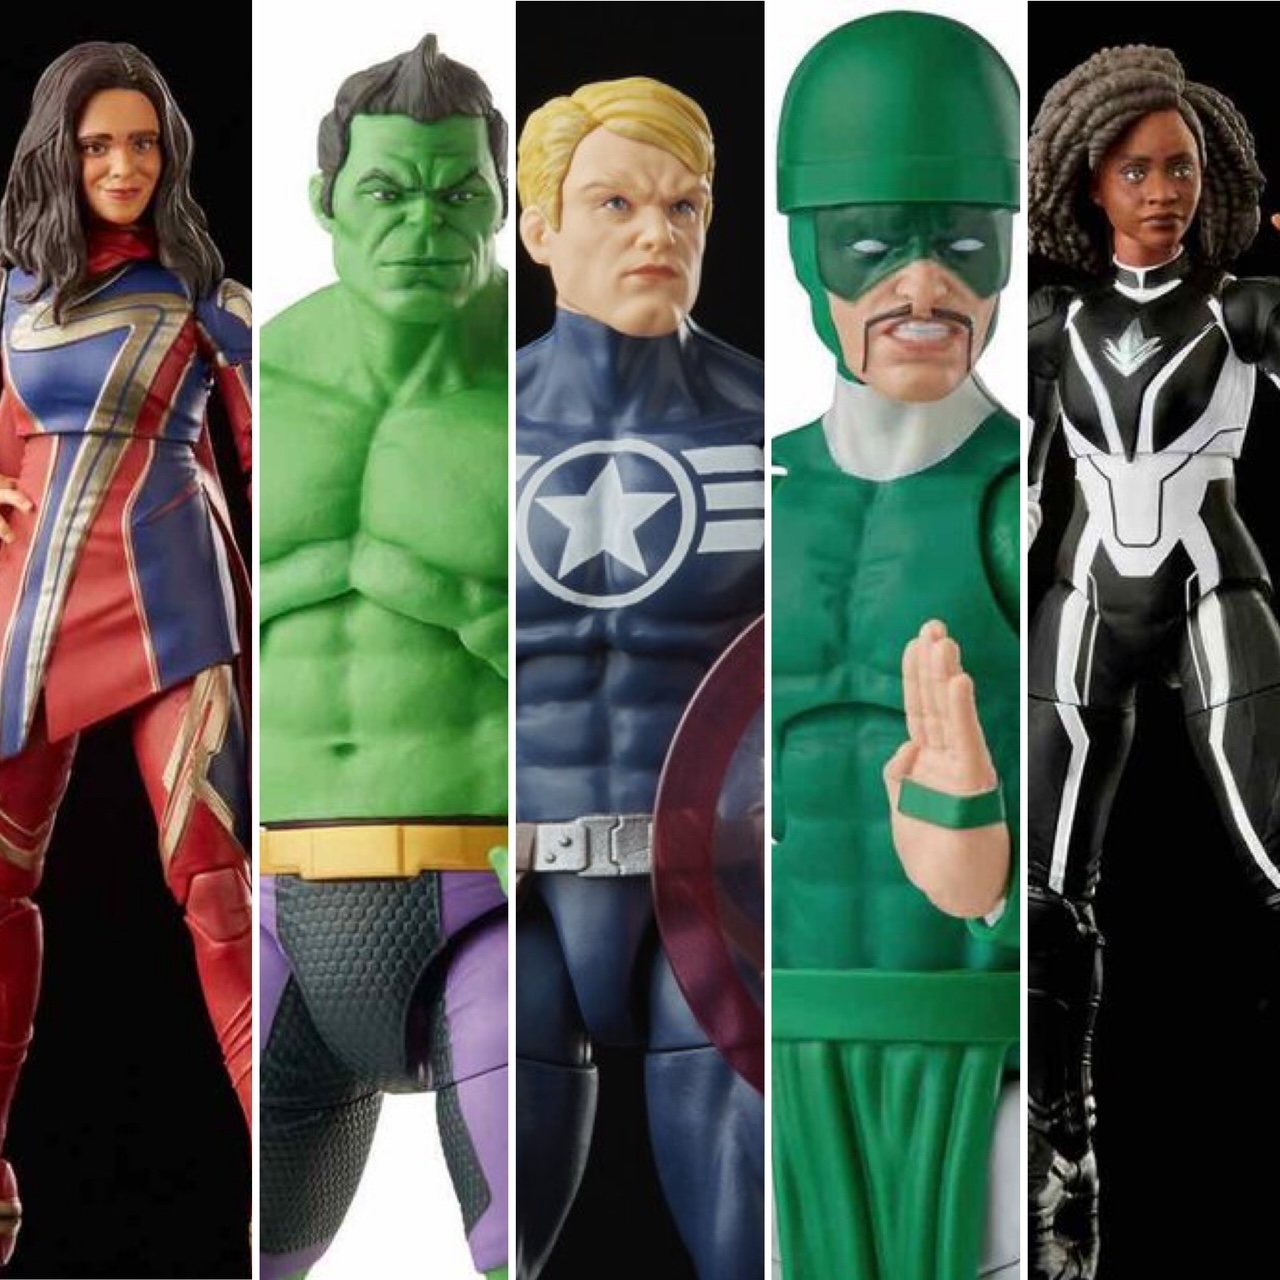 Marvel Legends Commander Rogers (Totally Awesome Hulk BAF)